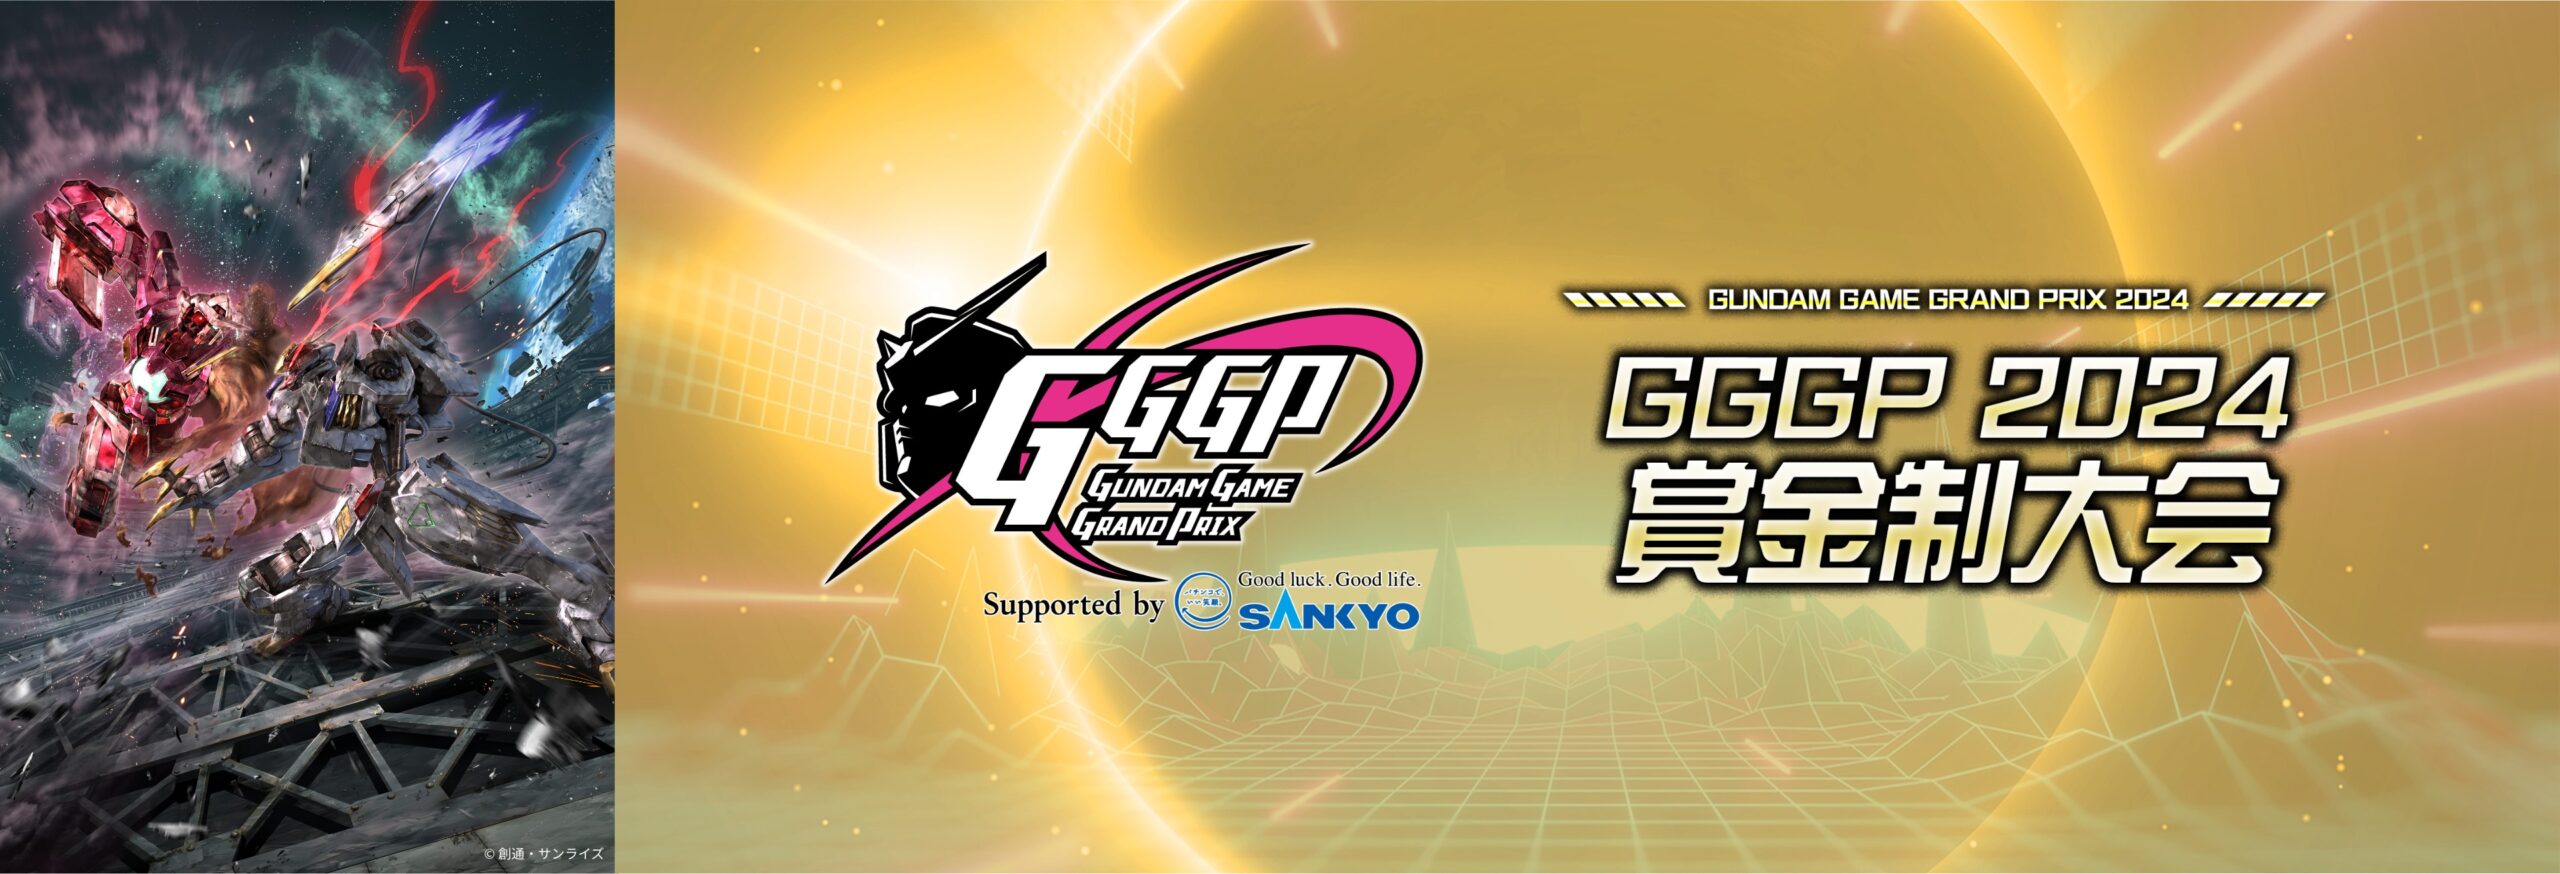 GGGP2024 賞金制大会 機動戦士ガンダムエクストリームバーサス2 オーバーブースト